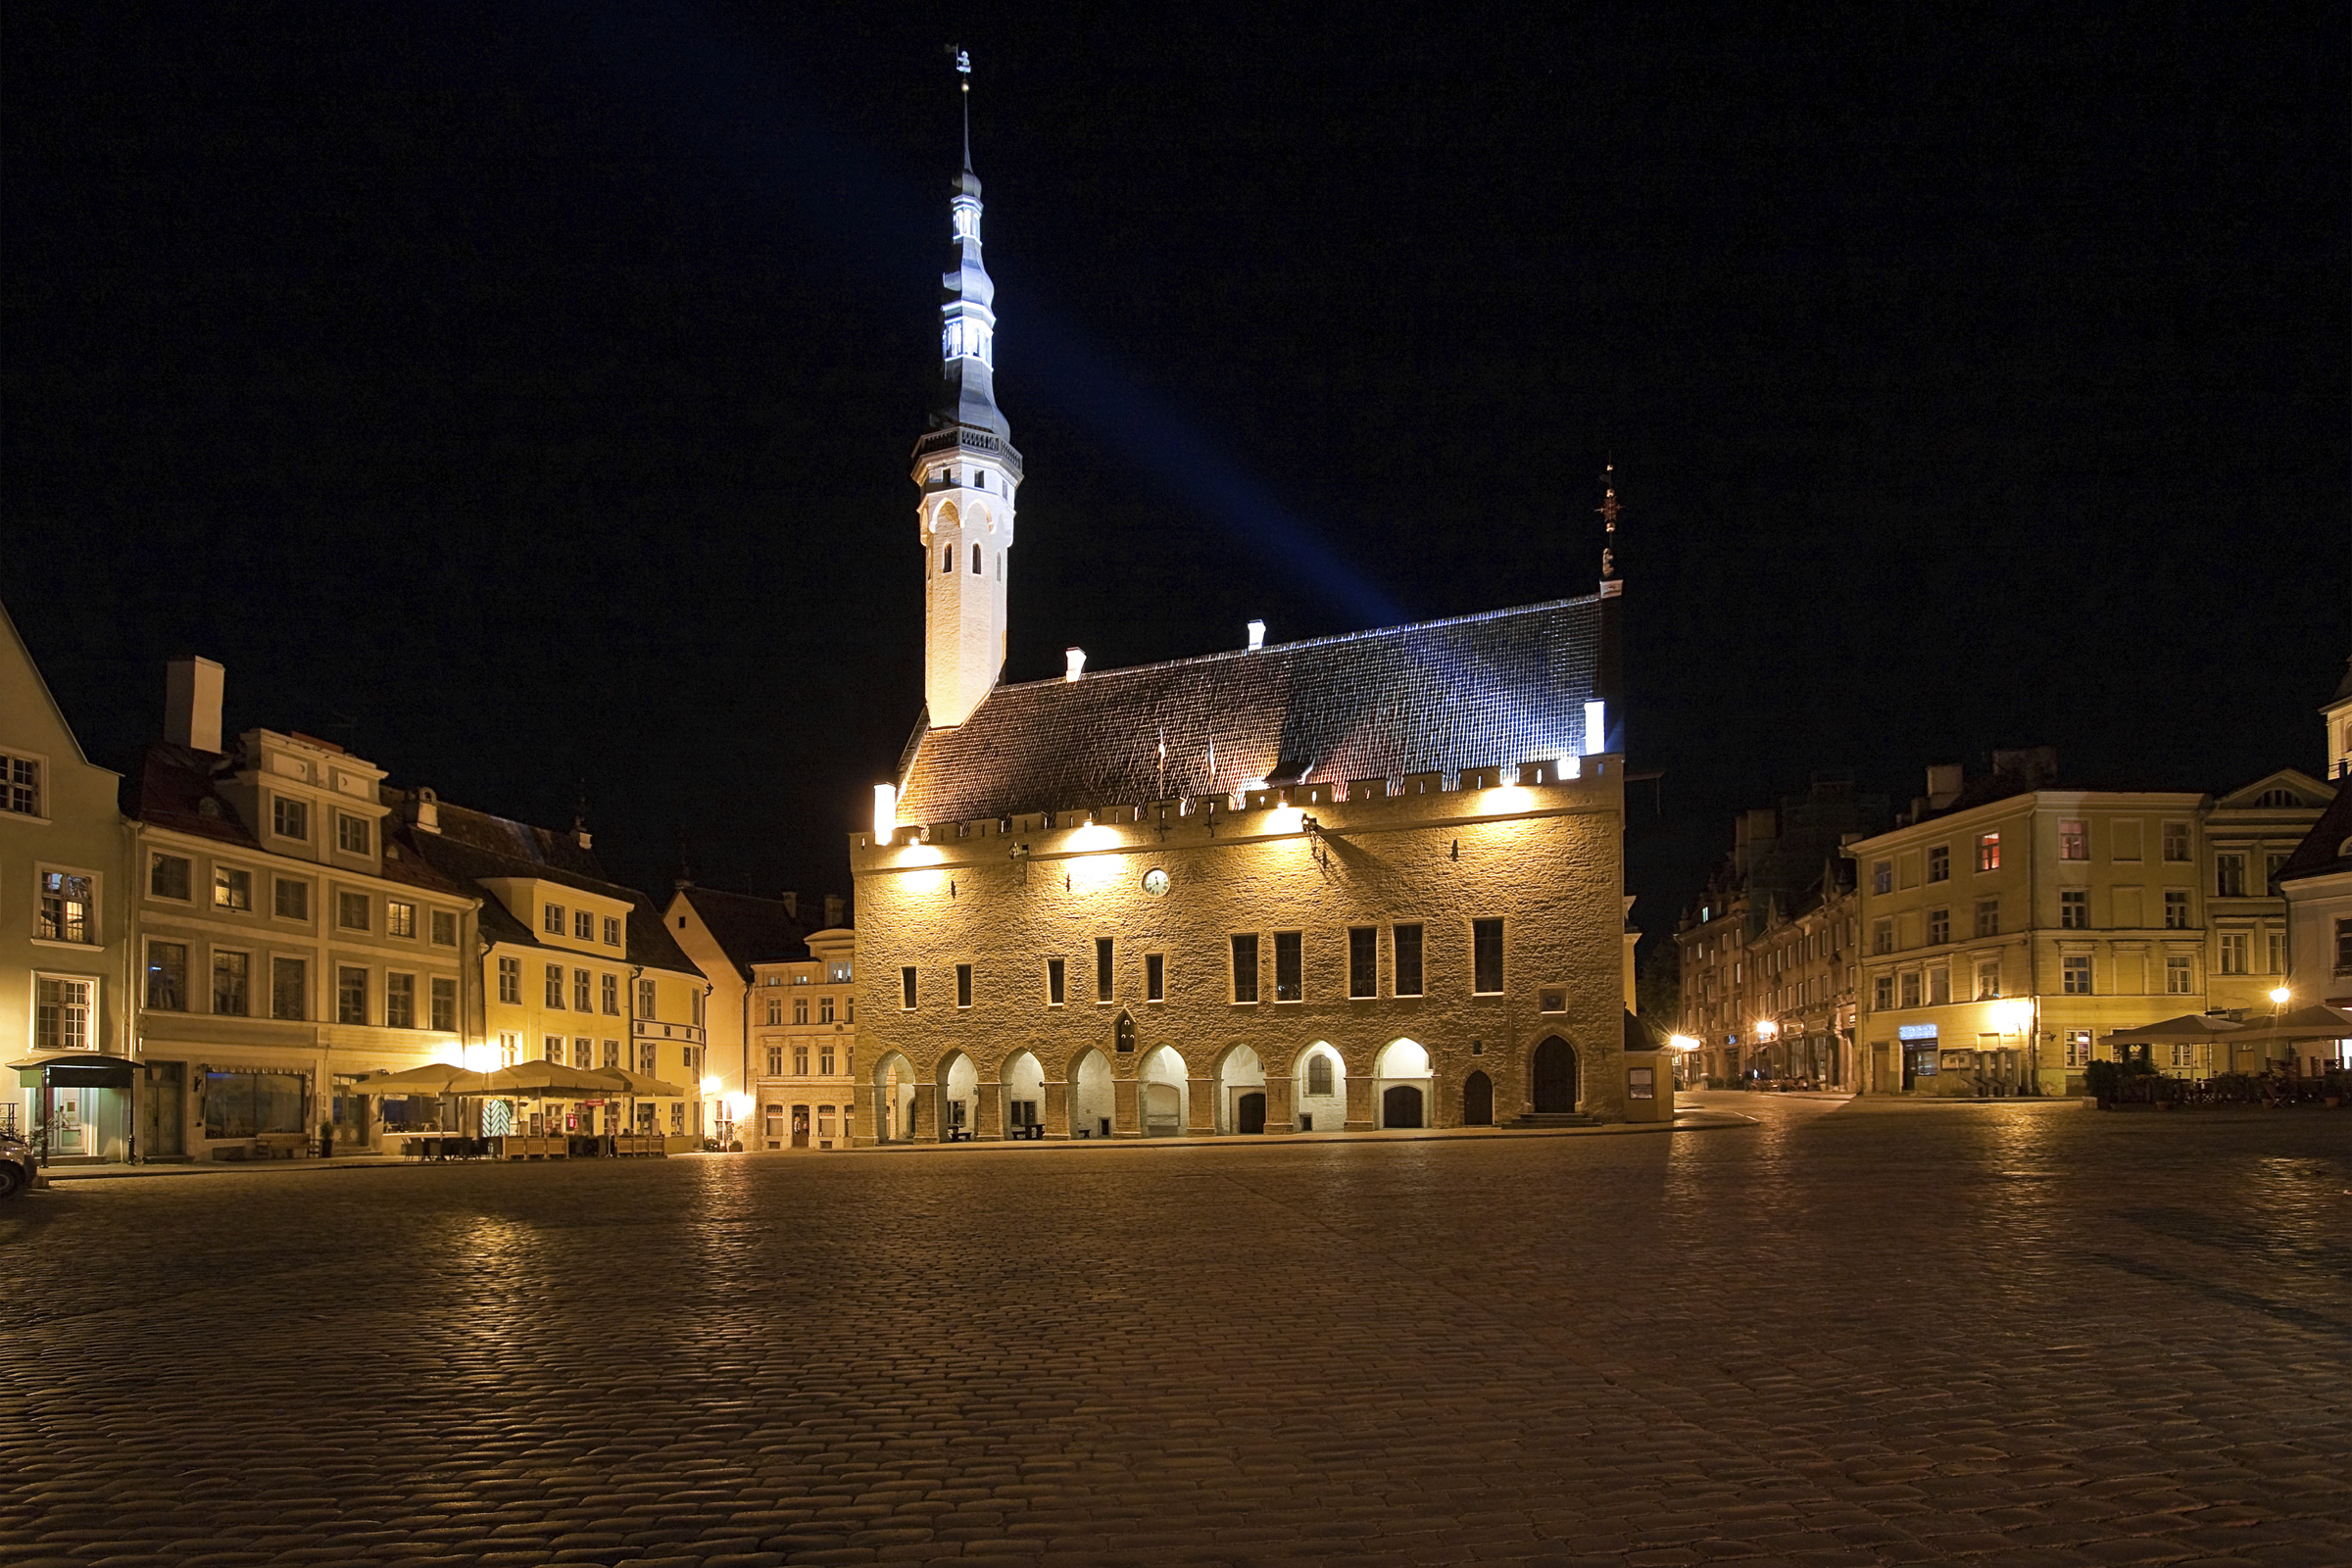 City Hall Square in Tallinn, Estonia